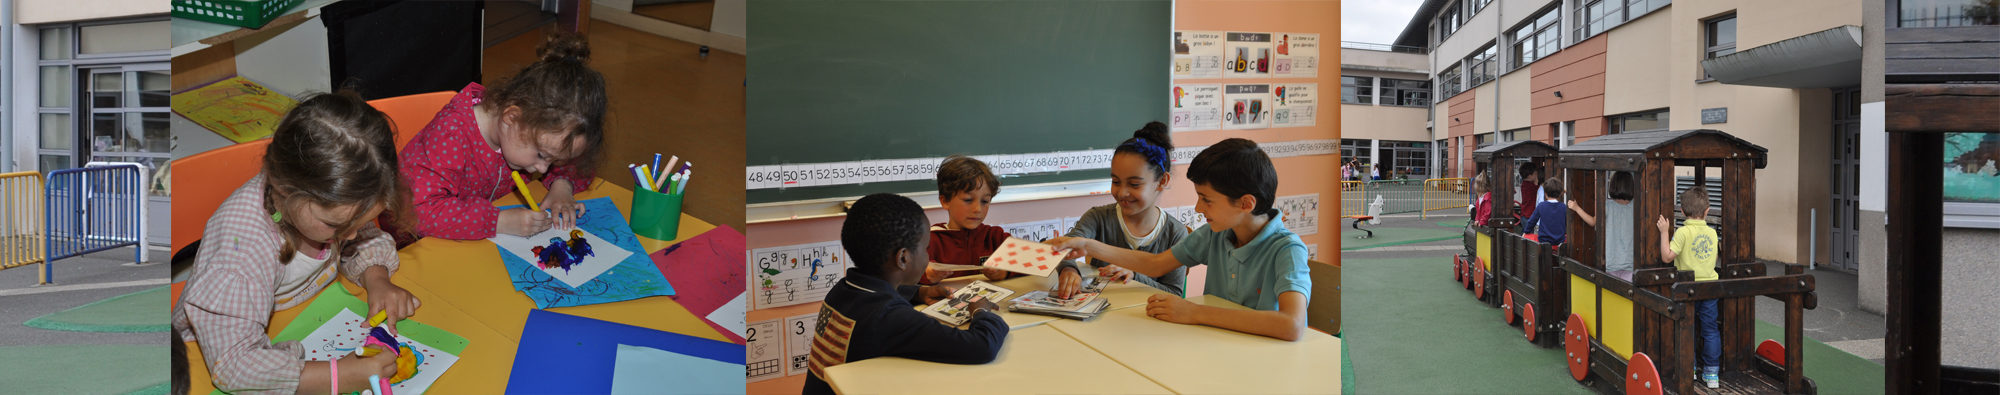 Ecole Primaire et maternelle Privée Notre Dame Mantes la Jolie ASNDSL